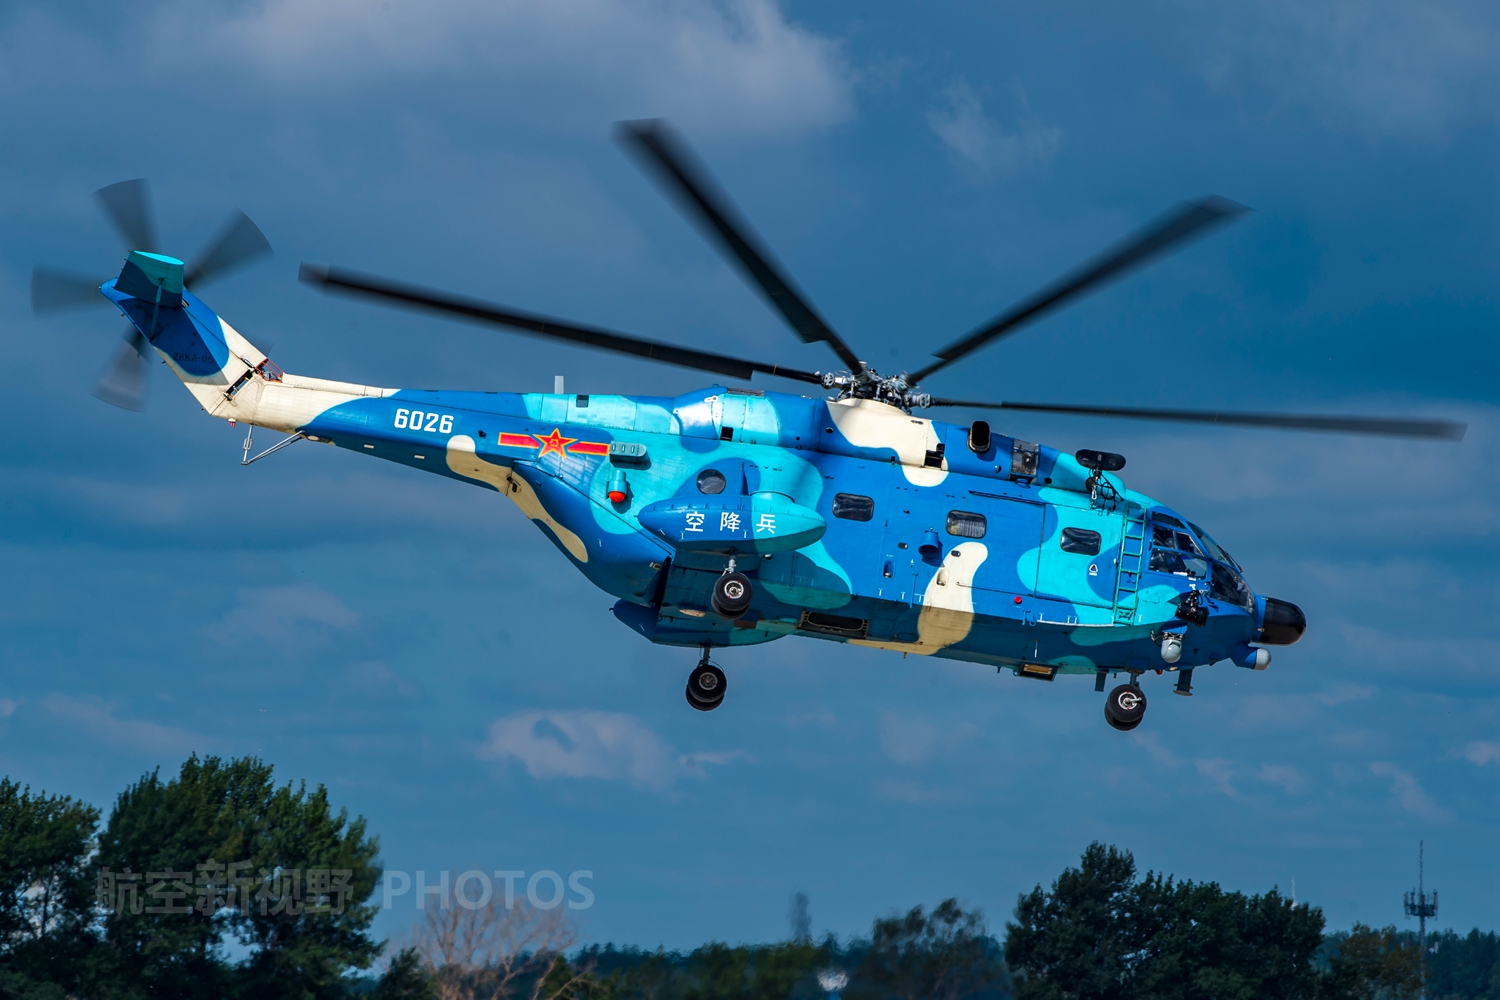 直-8直升机高清图,仿制法国超黄蜂,现已成我国大型直升机主力